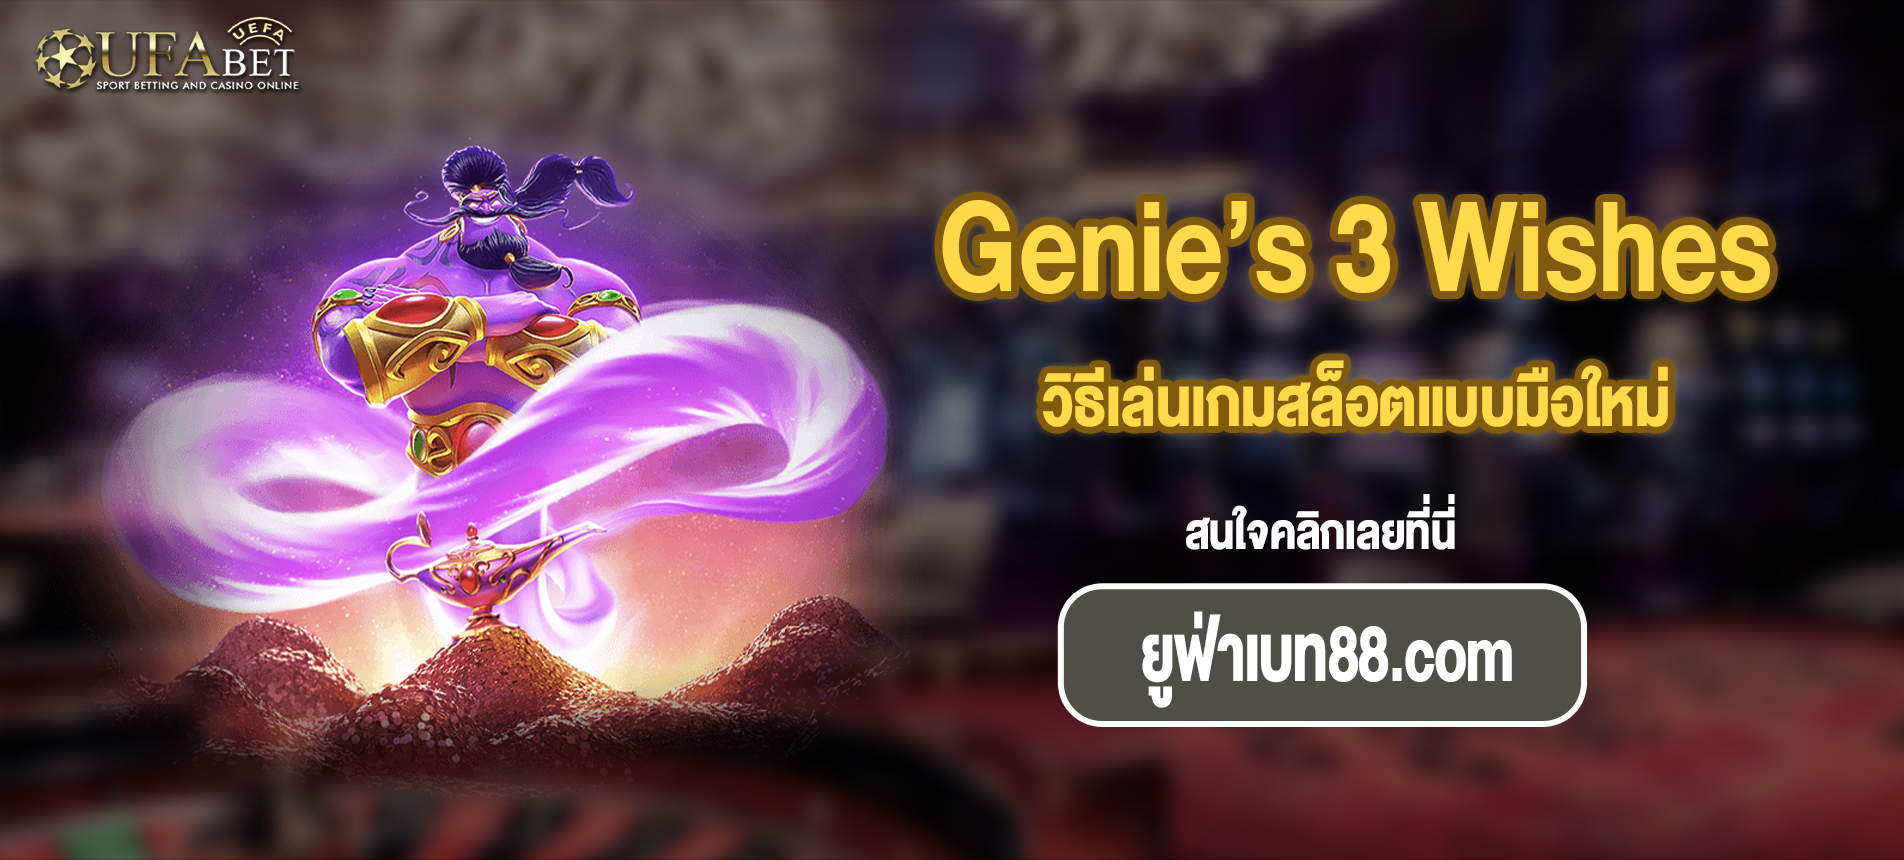 วิธีเล่นเกมสล็อตแบบมือใหม่ Genie’s 3 Wishes